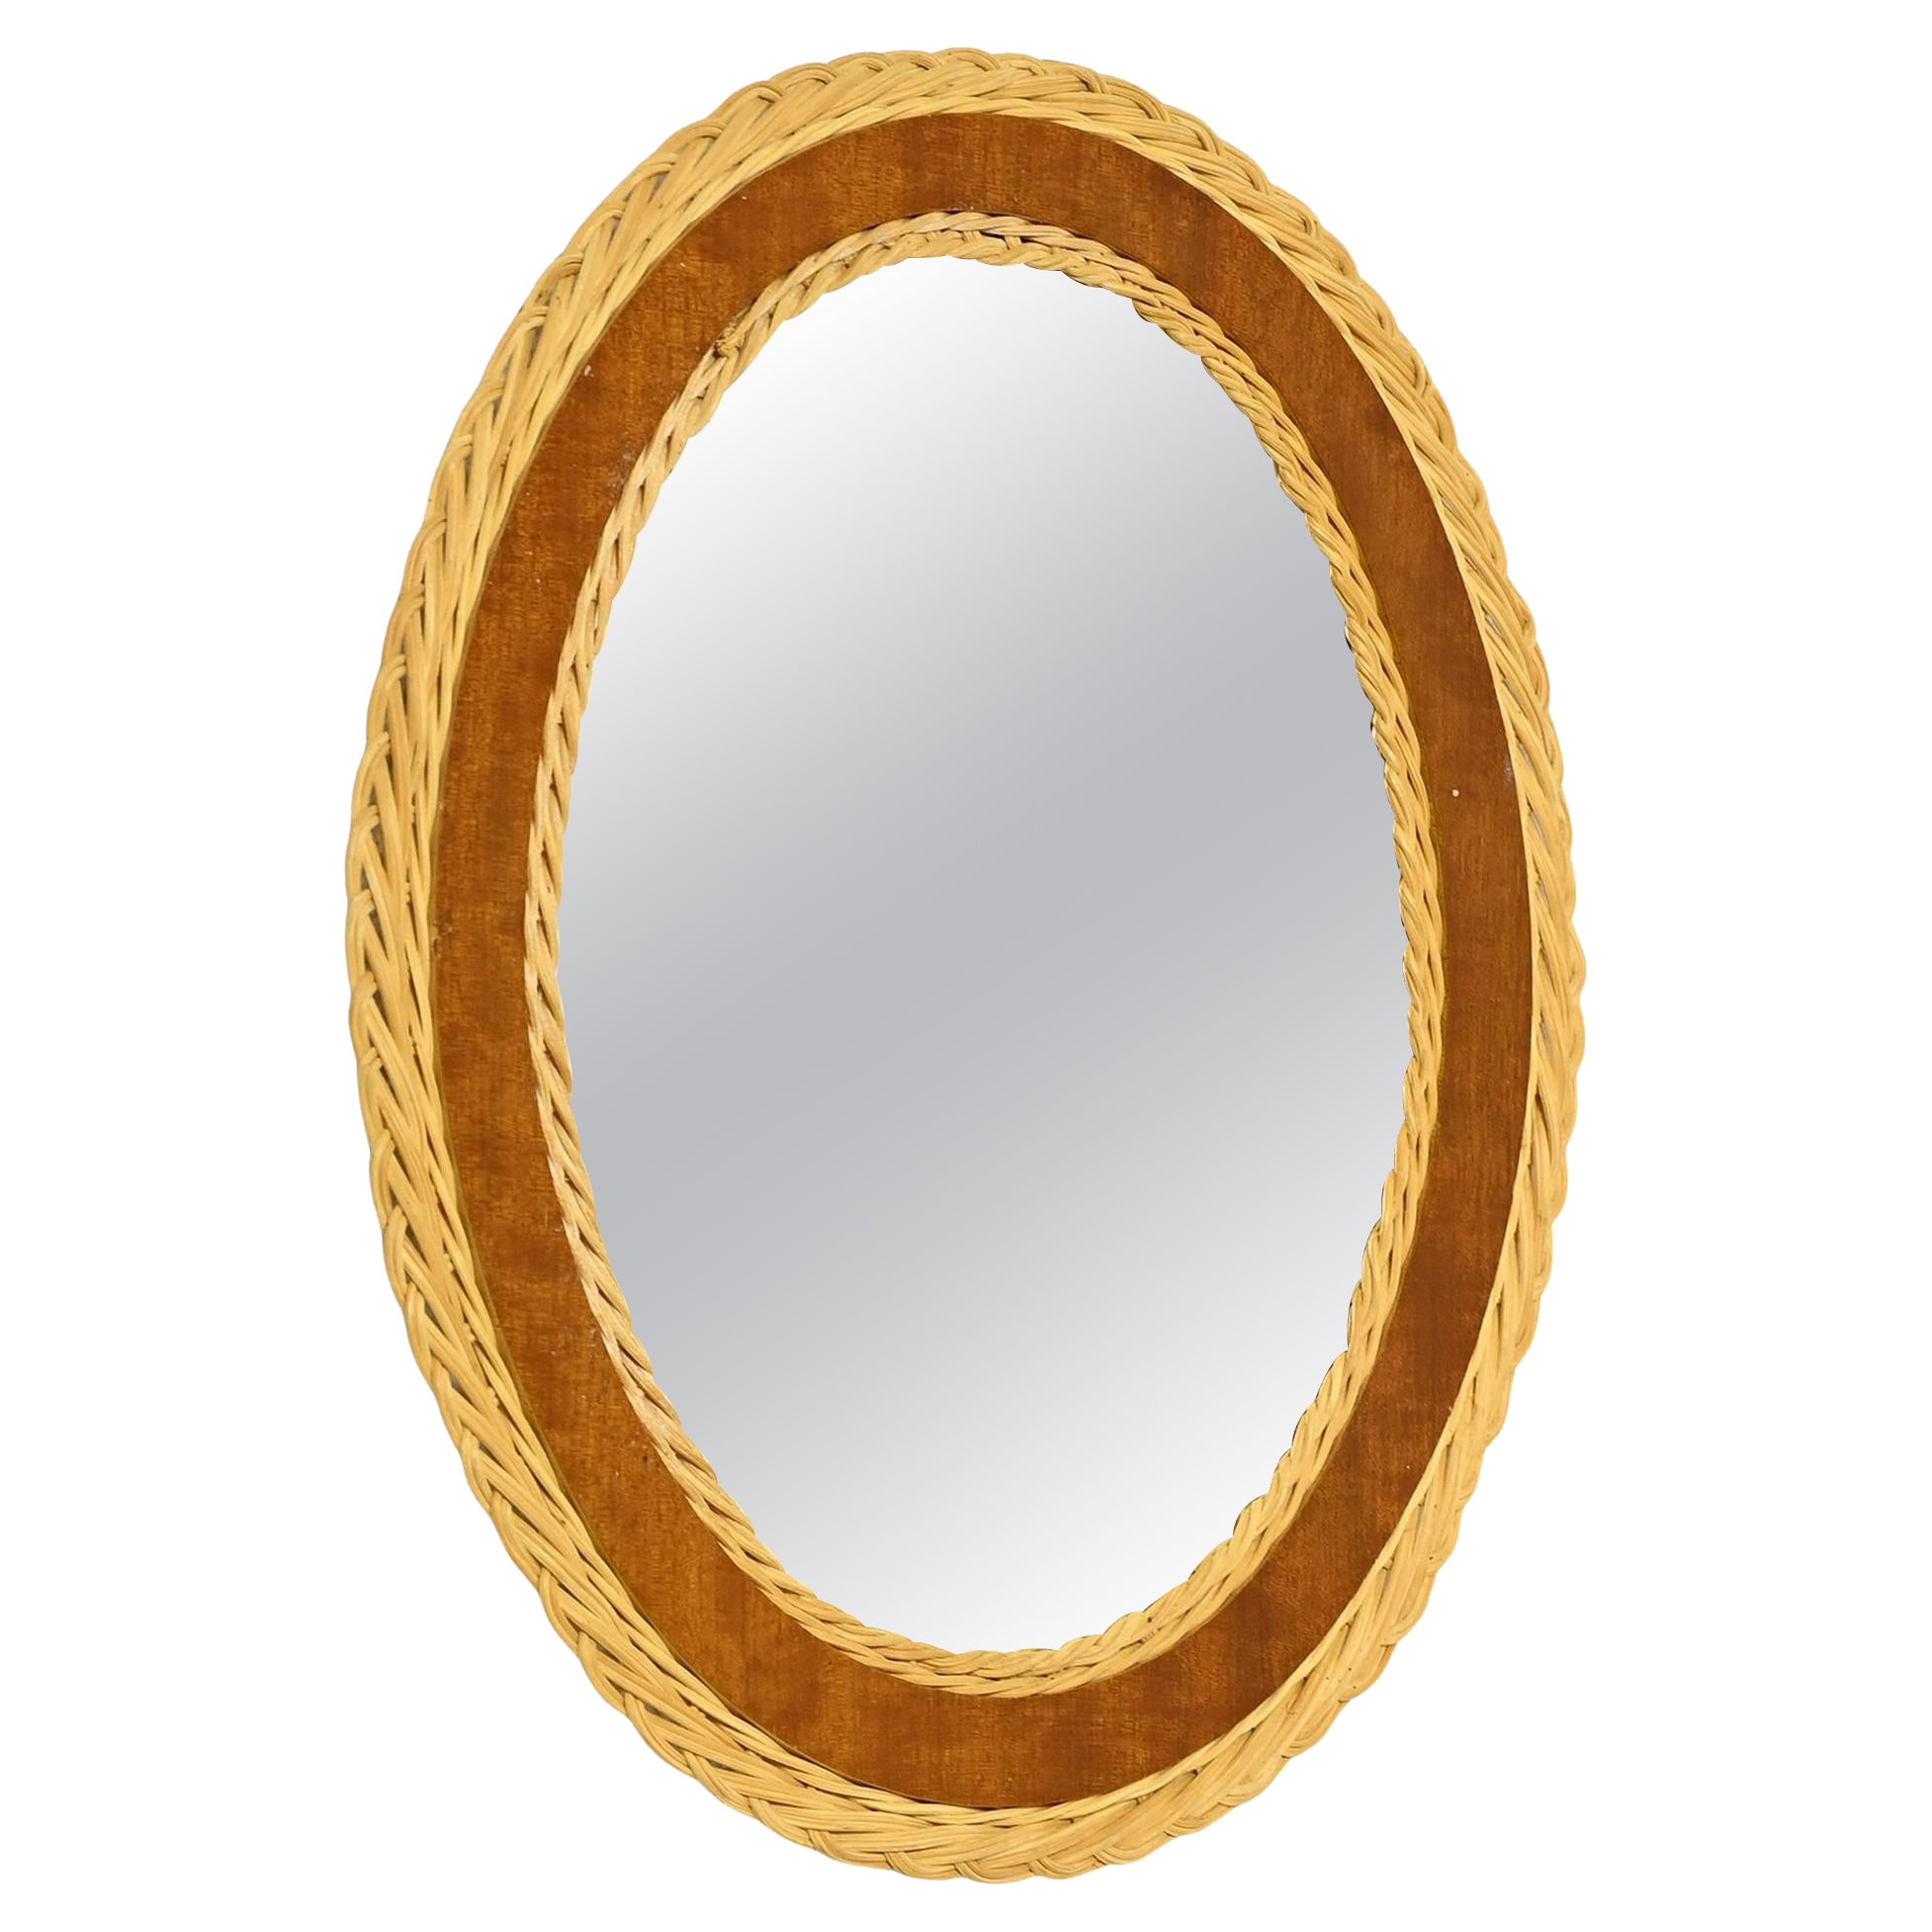 Scandinavian round mirror For Sale